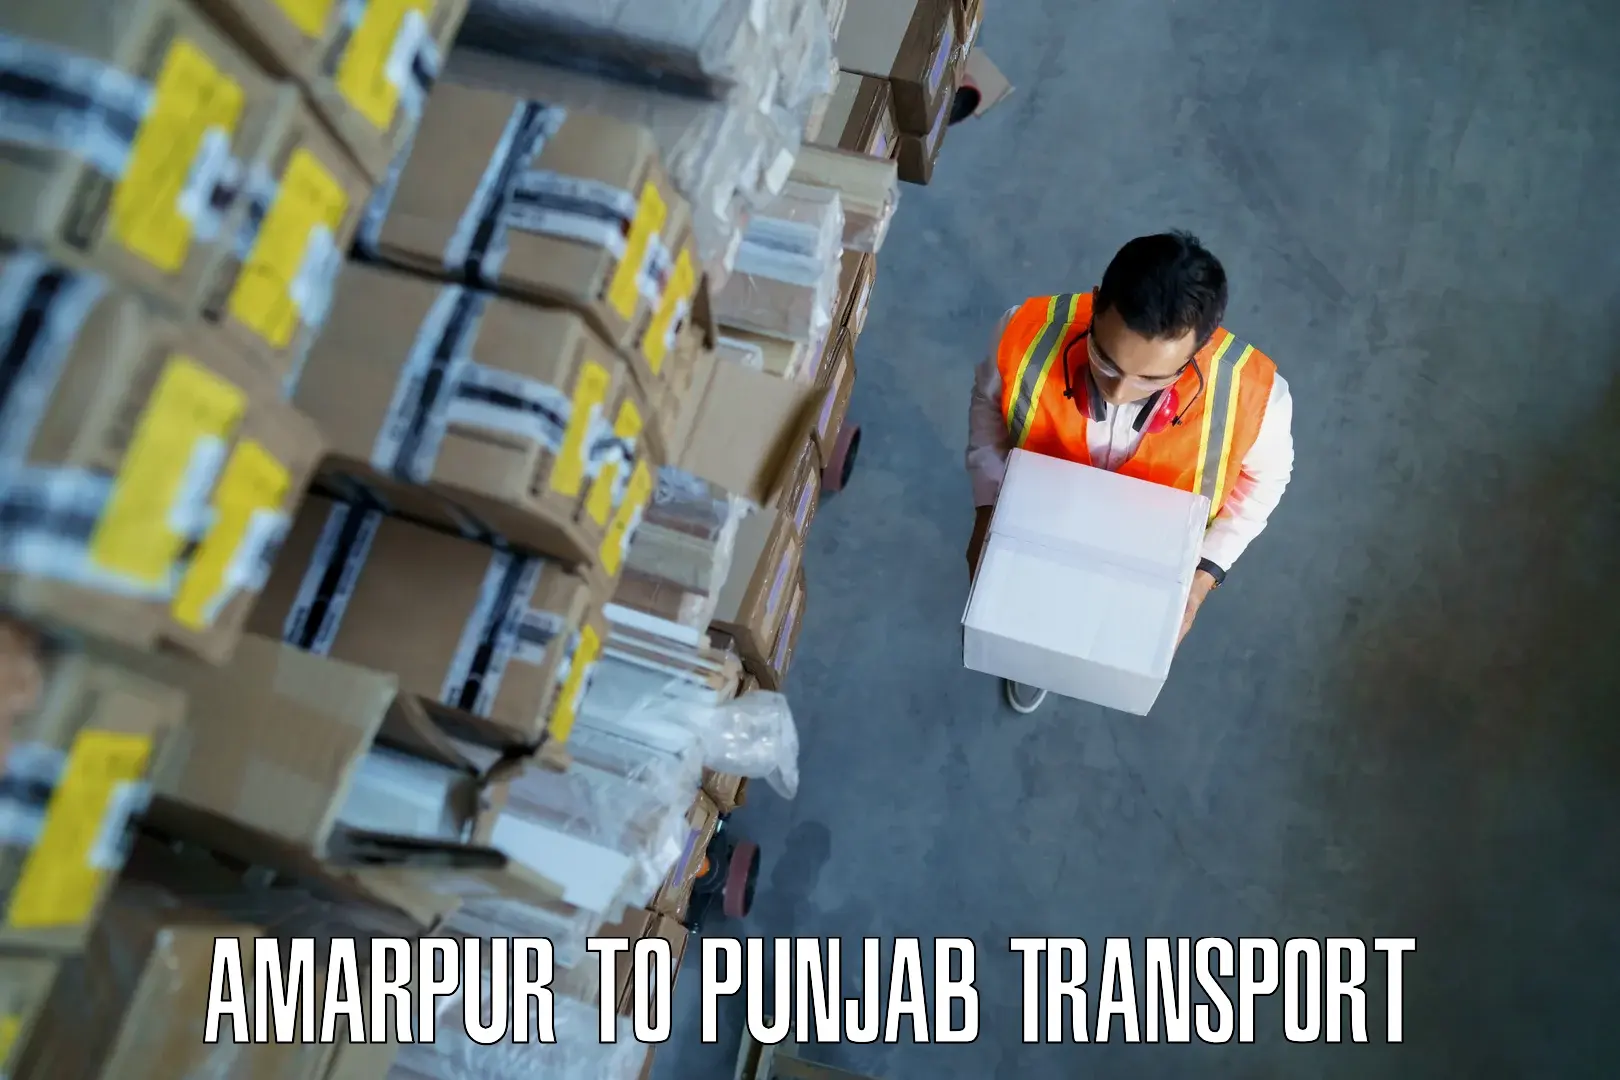 Two wheeler parcel service Amarpur to Punjab